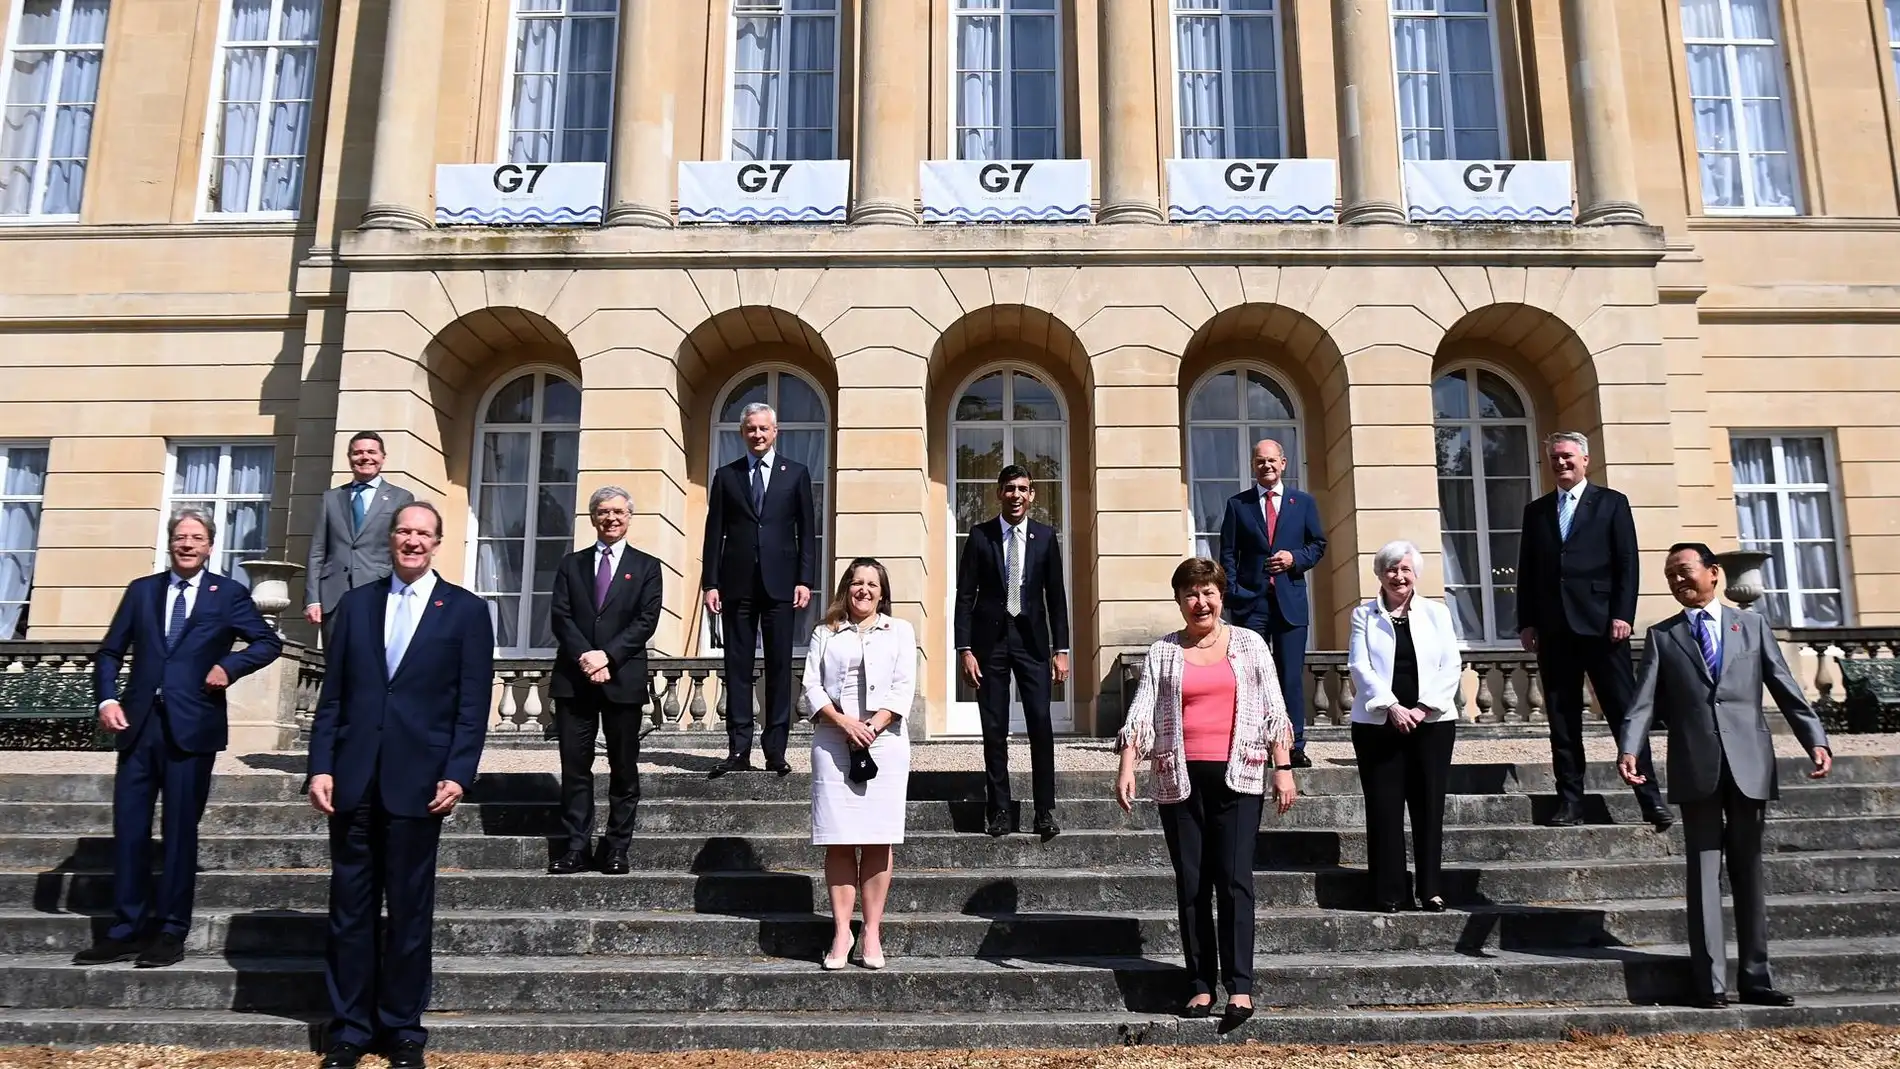 El G7 llega a un acuerdo "histórico" para reformar el sistema fiscal global